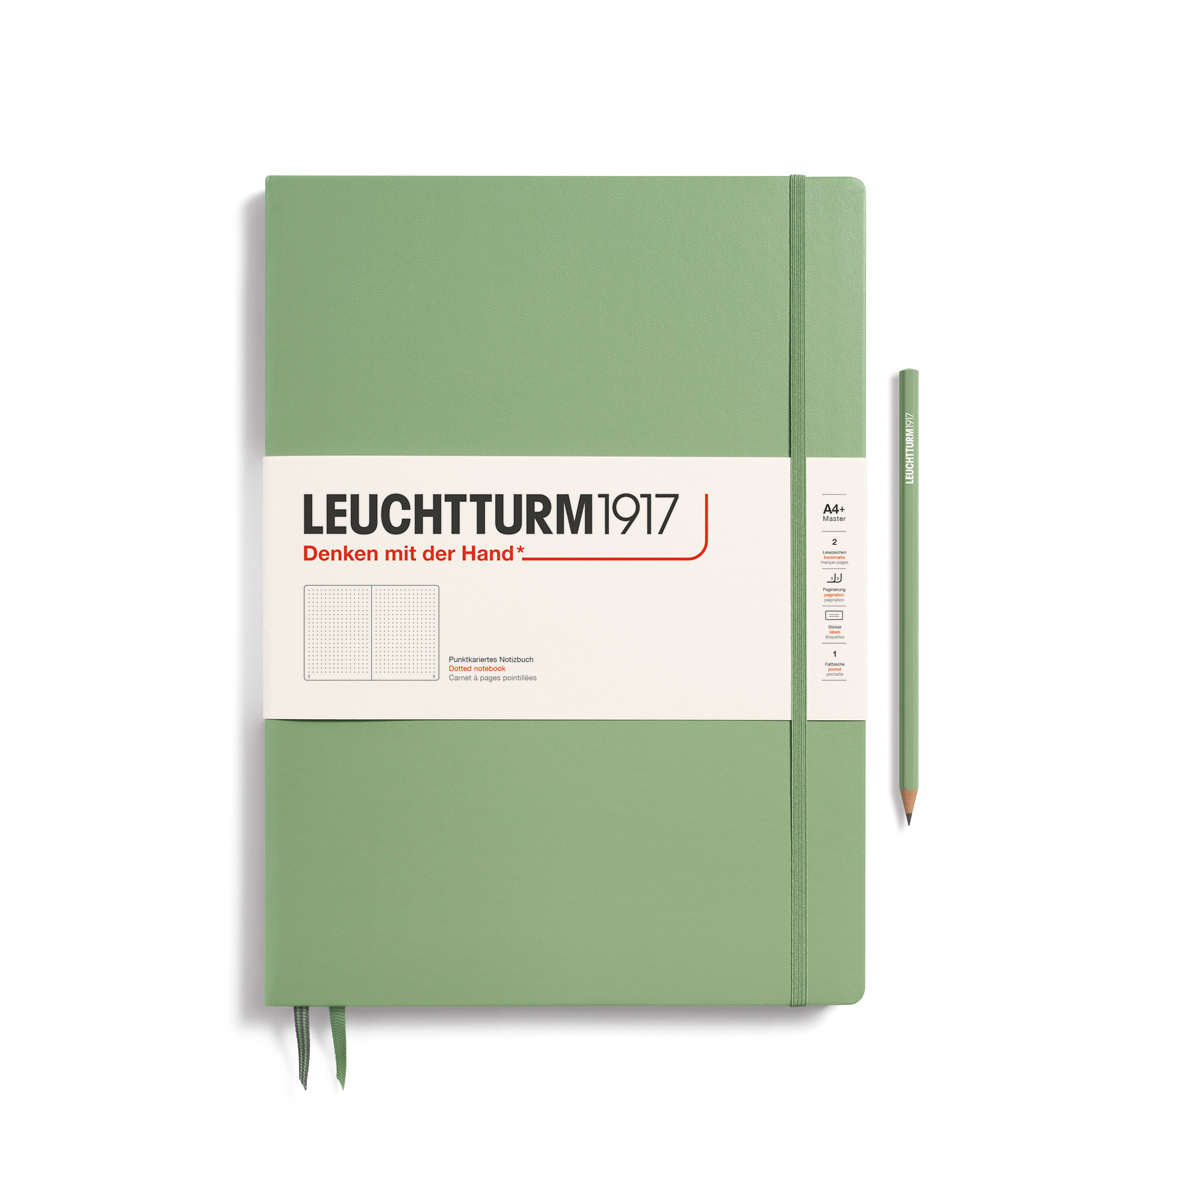 Записная книжка в точку Leuchtturm Master Slim А4+ 123 стр., твердая обложка пастельный зеленый записная книжка forest animal 96 листов а6